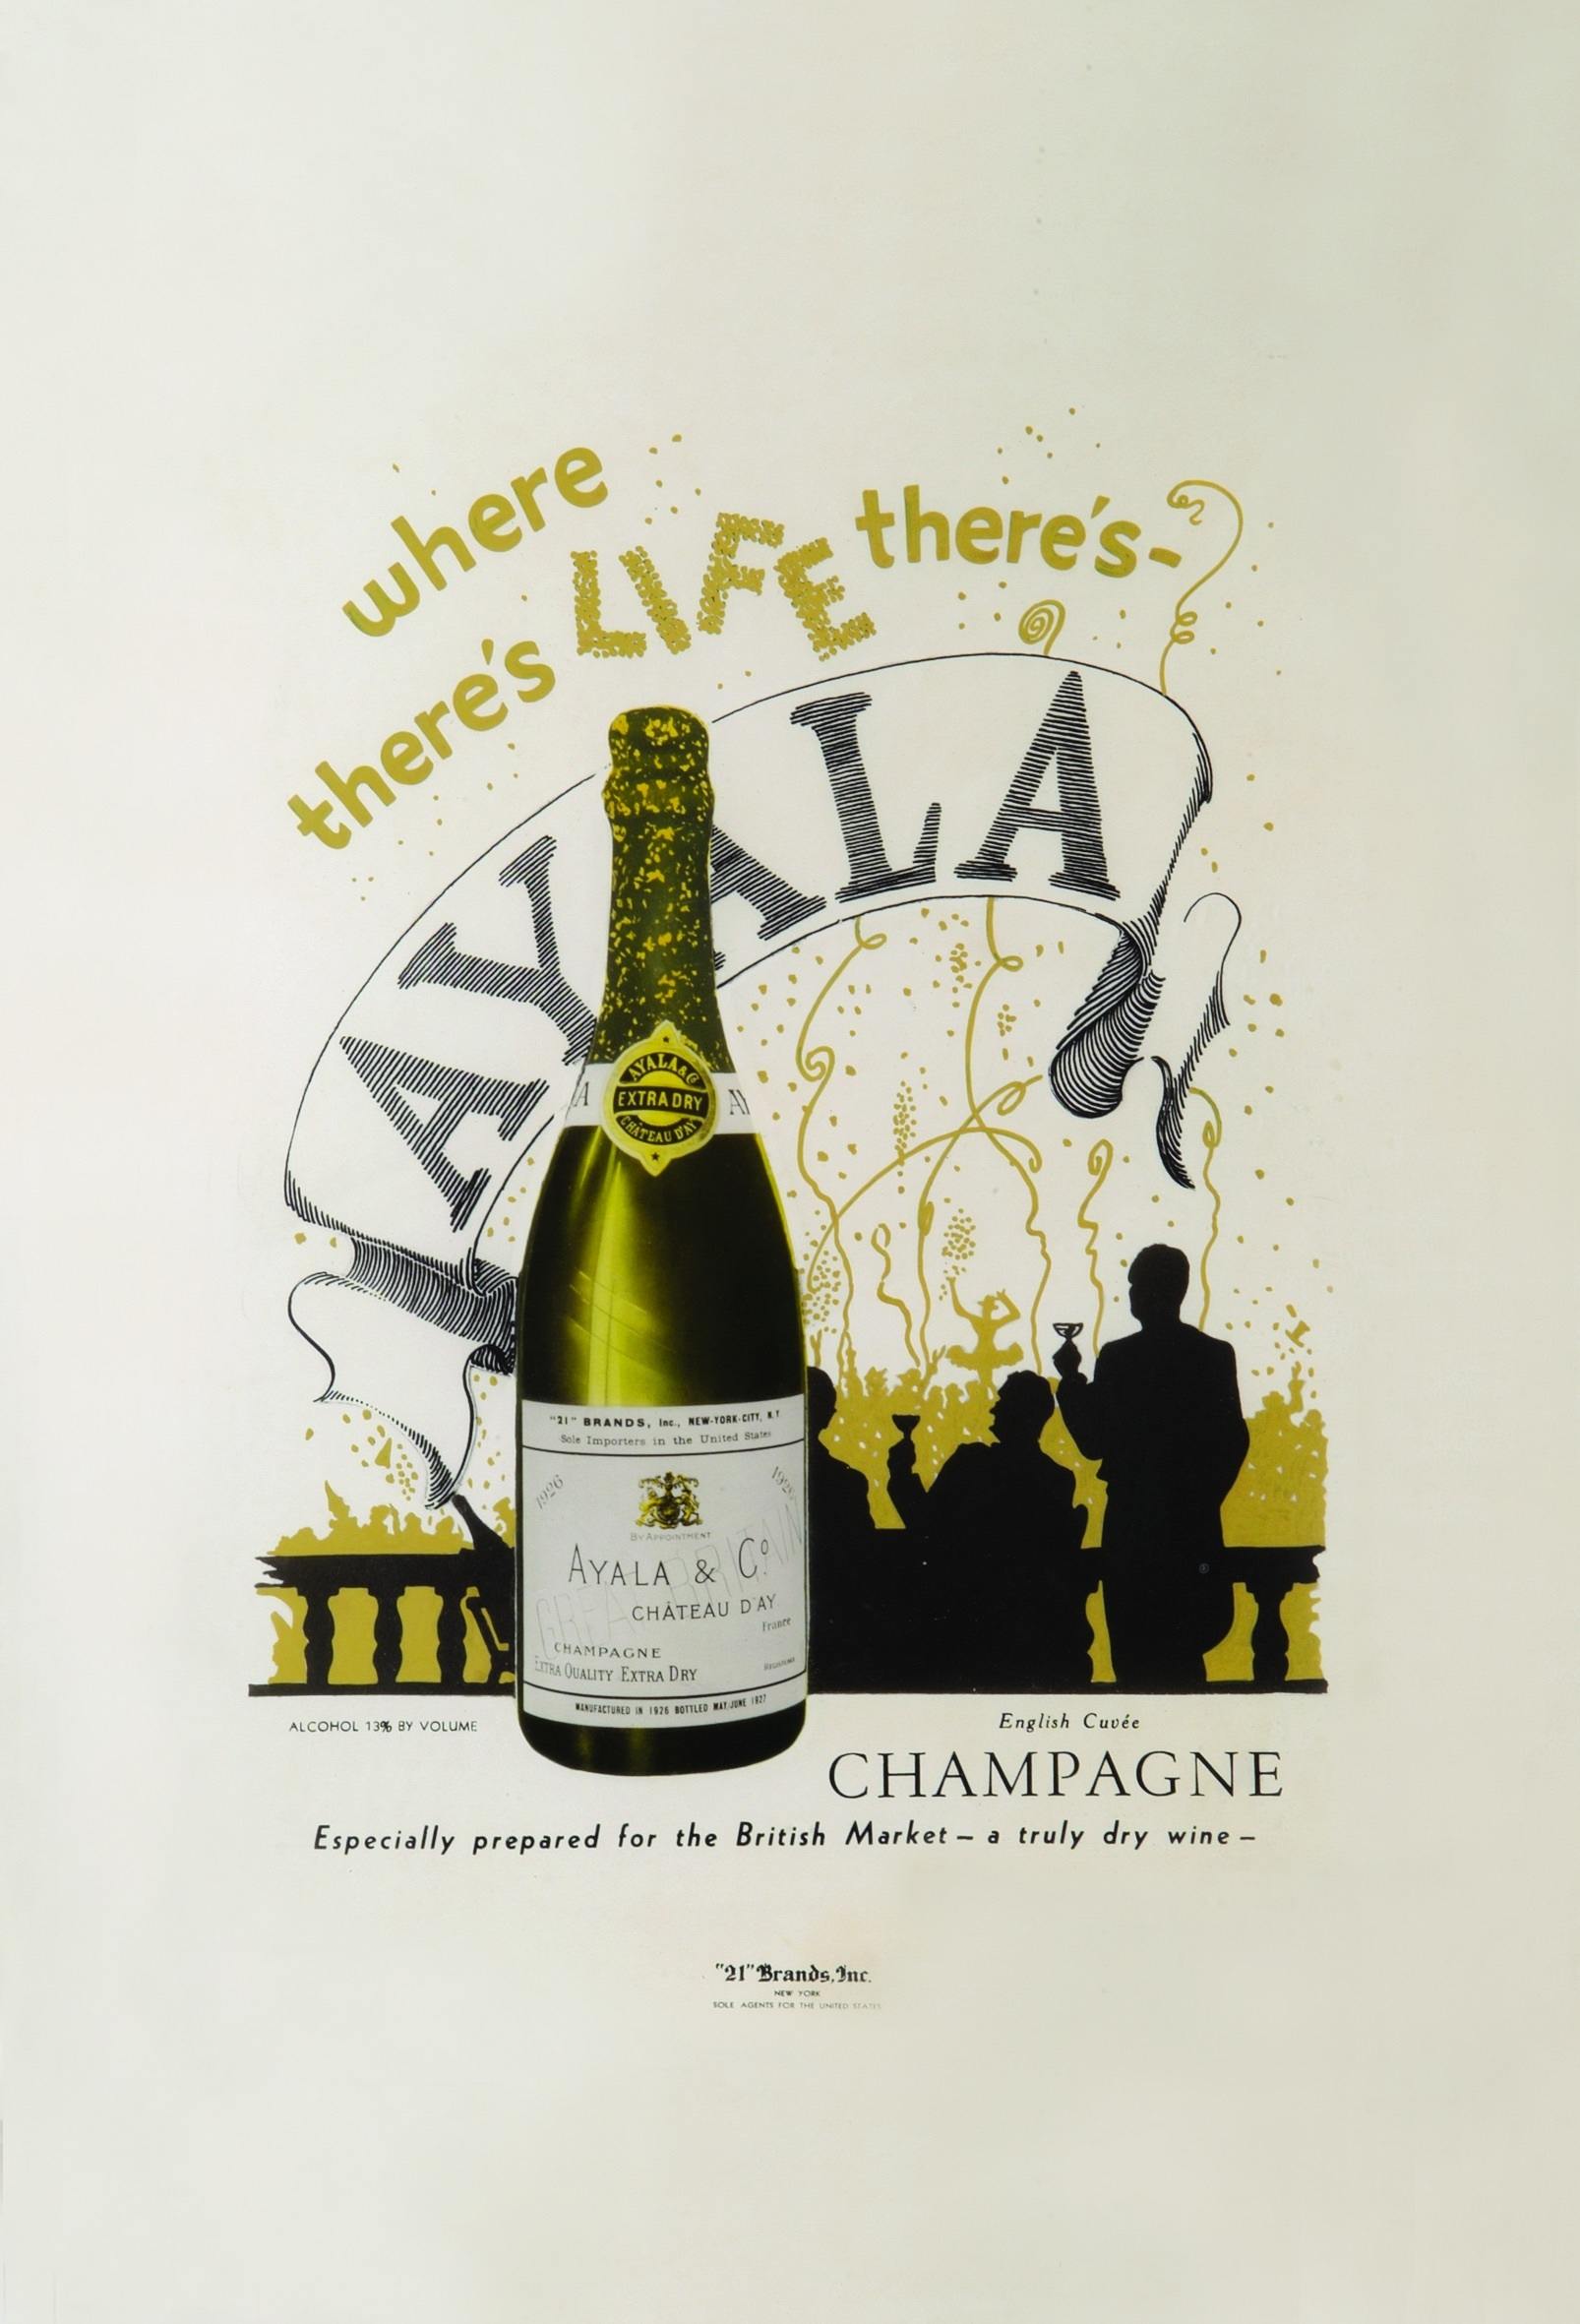 受け継がれる伝統 - Champagne Ayala